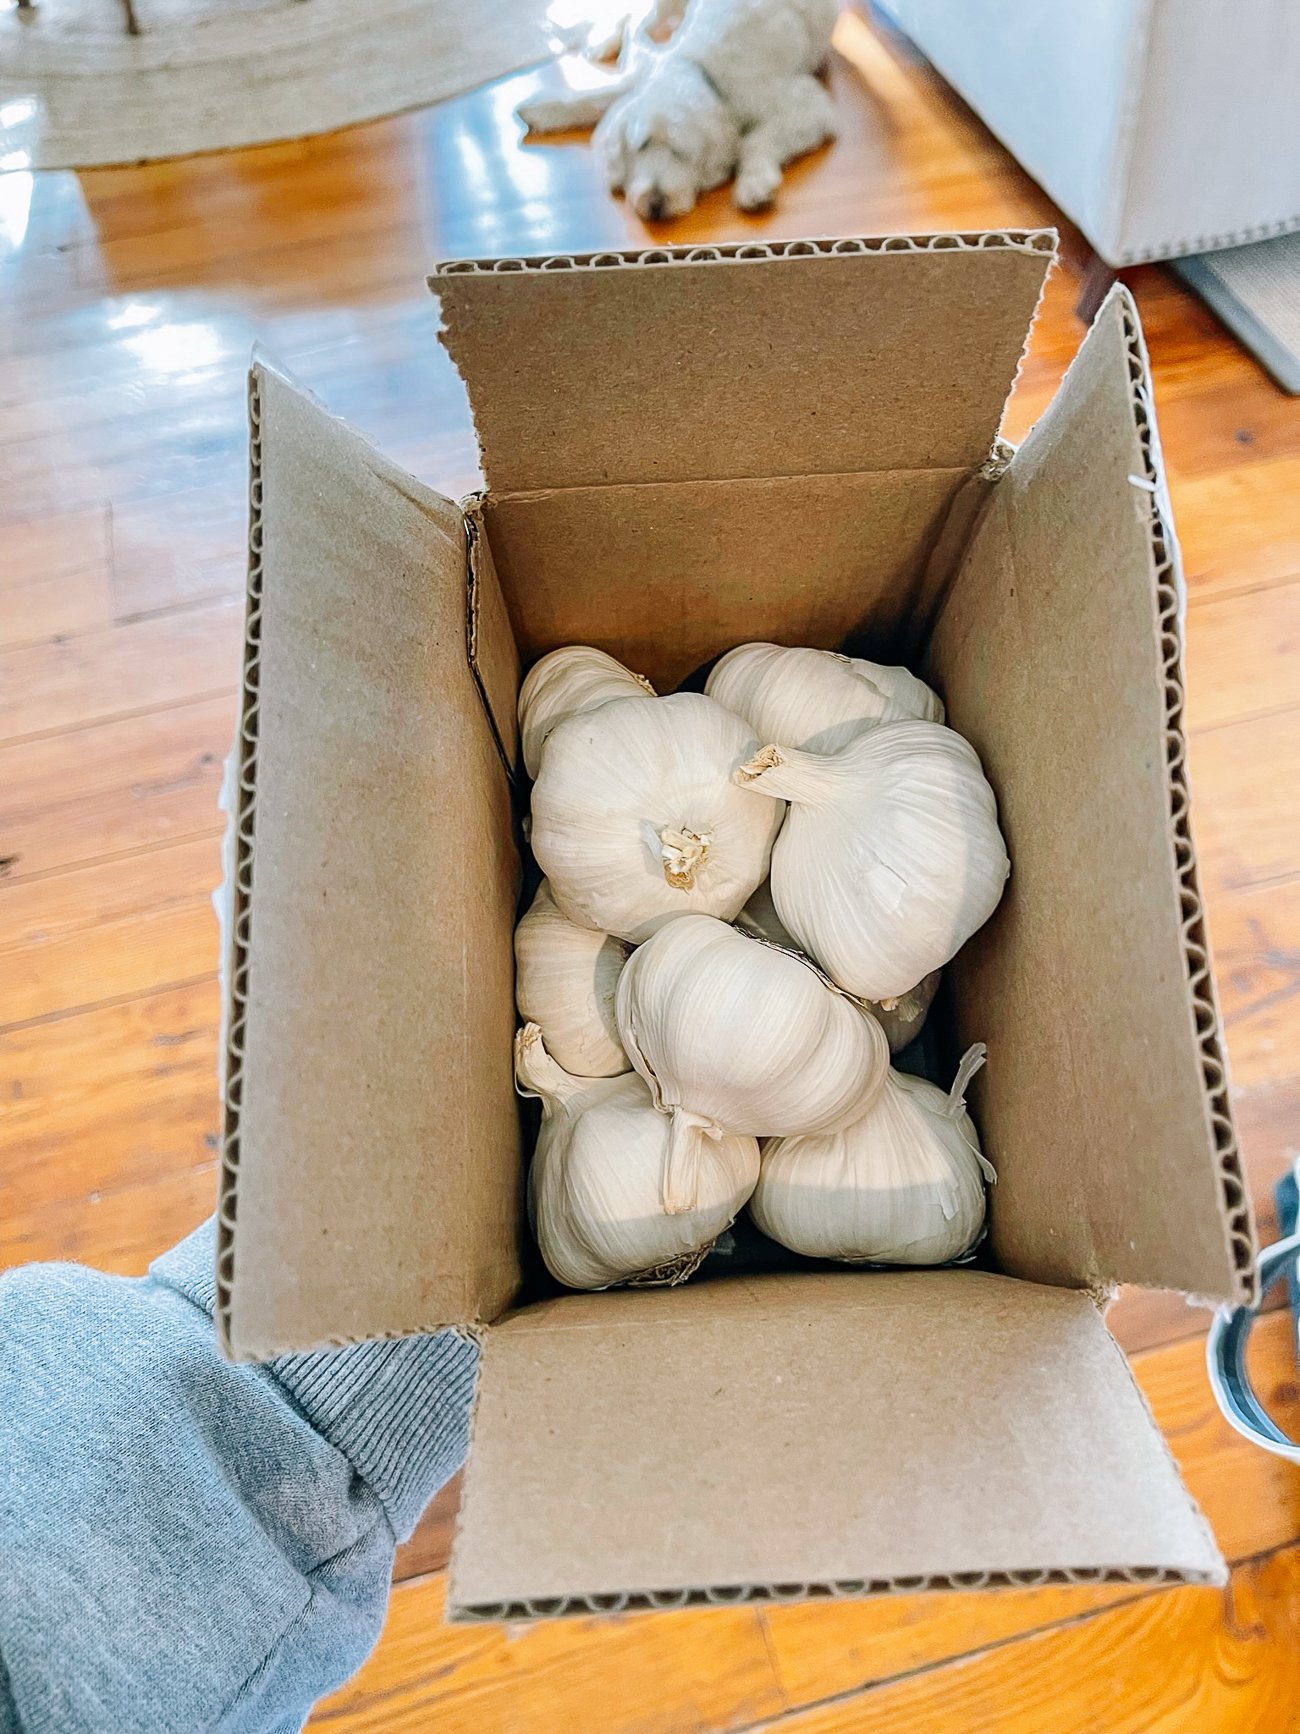 seed garlic in box